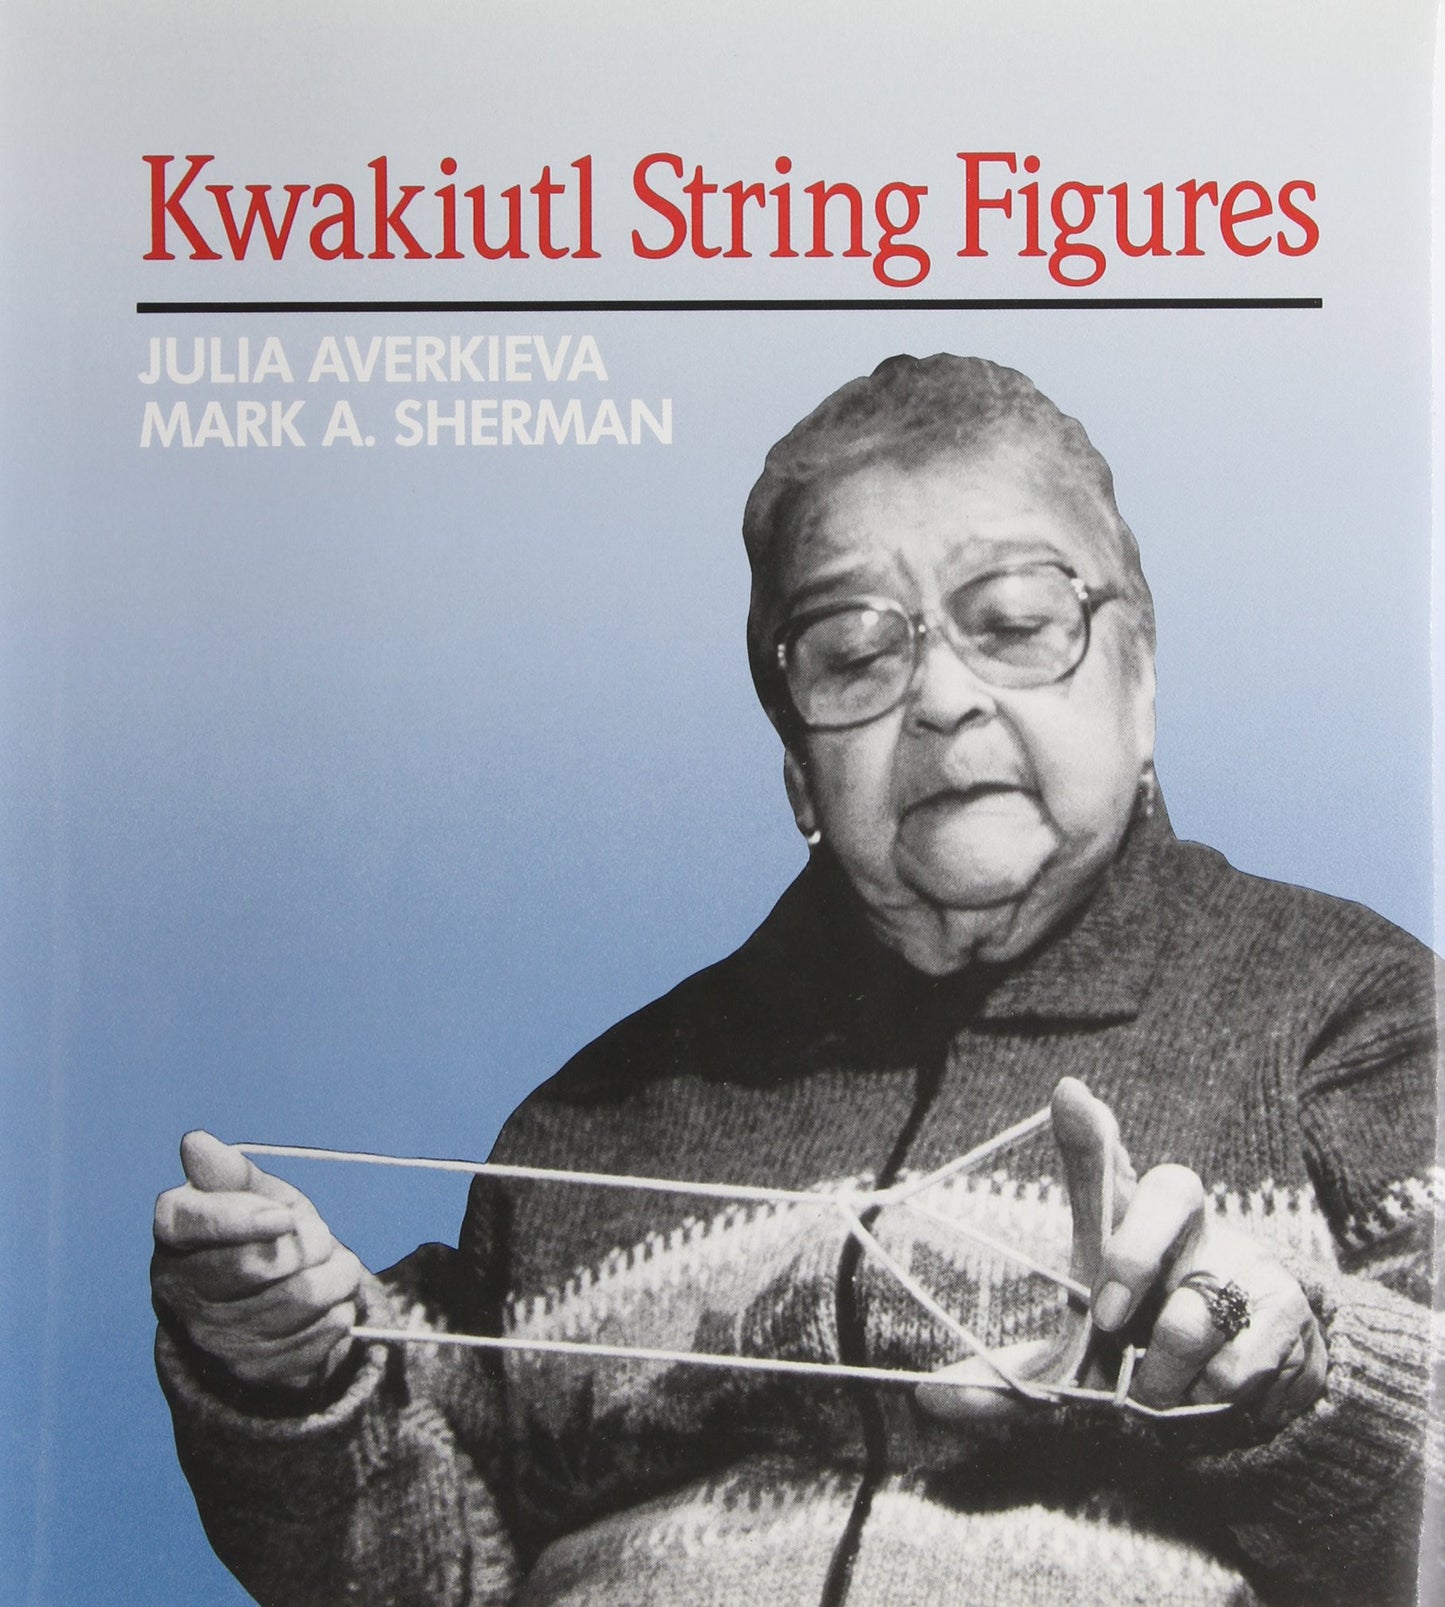 Kwakiutl String Figures by Julia Averkieva